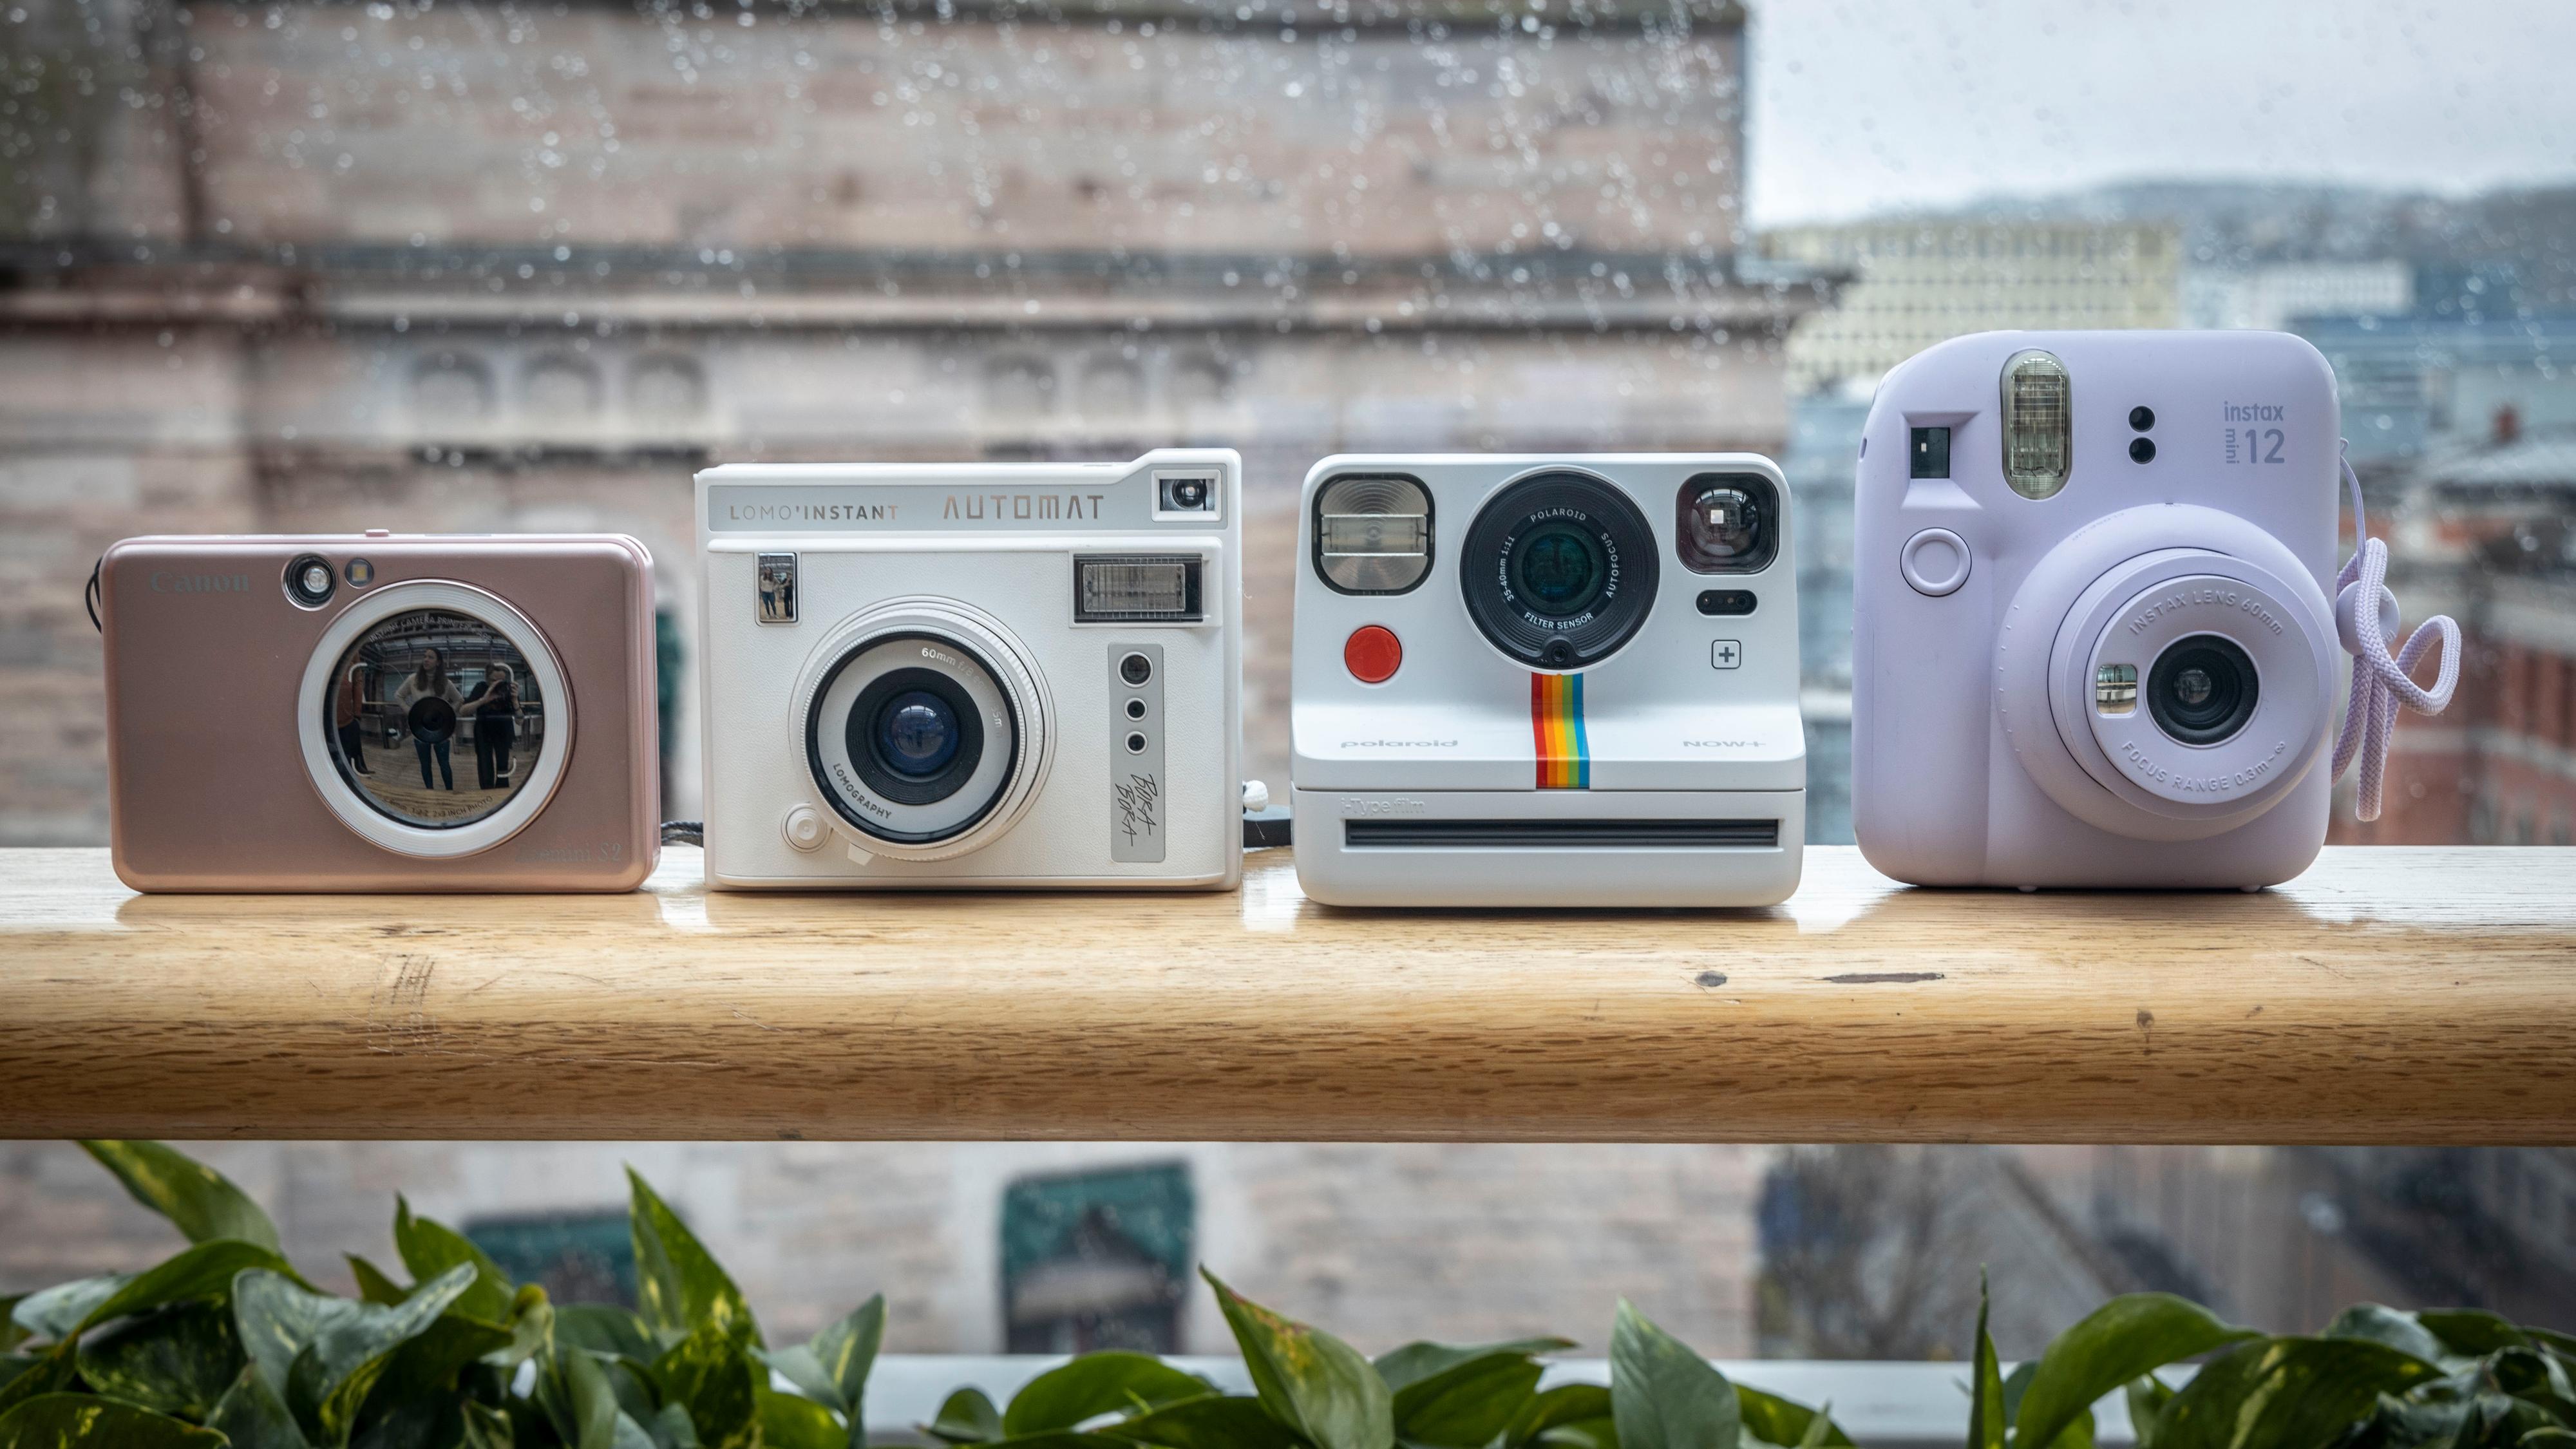 Fire kameraer har vært inne til test. Fra venstre: Canon Zoemini S2, Lomography Lomo´Instant Automat, Polaroid NOW+ og Fujifilm Instax 12 mini.